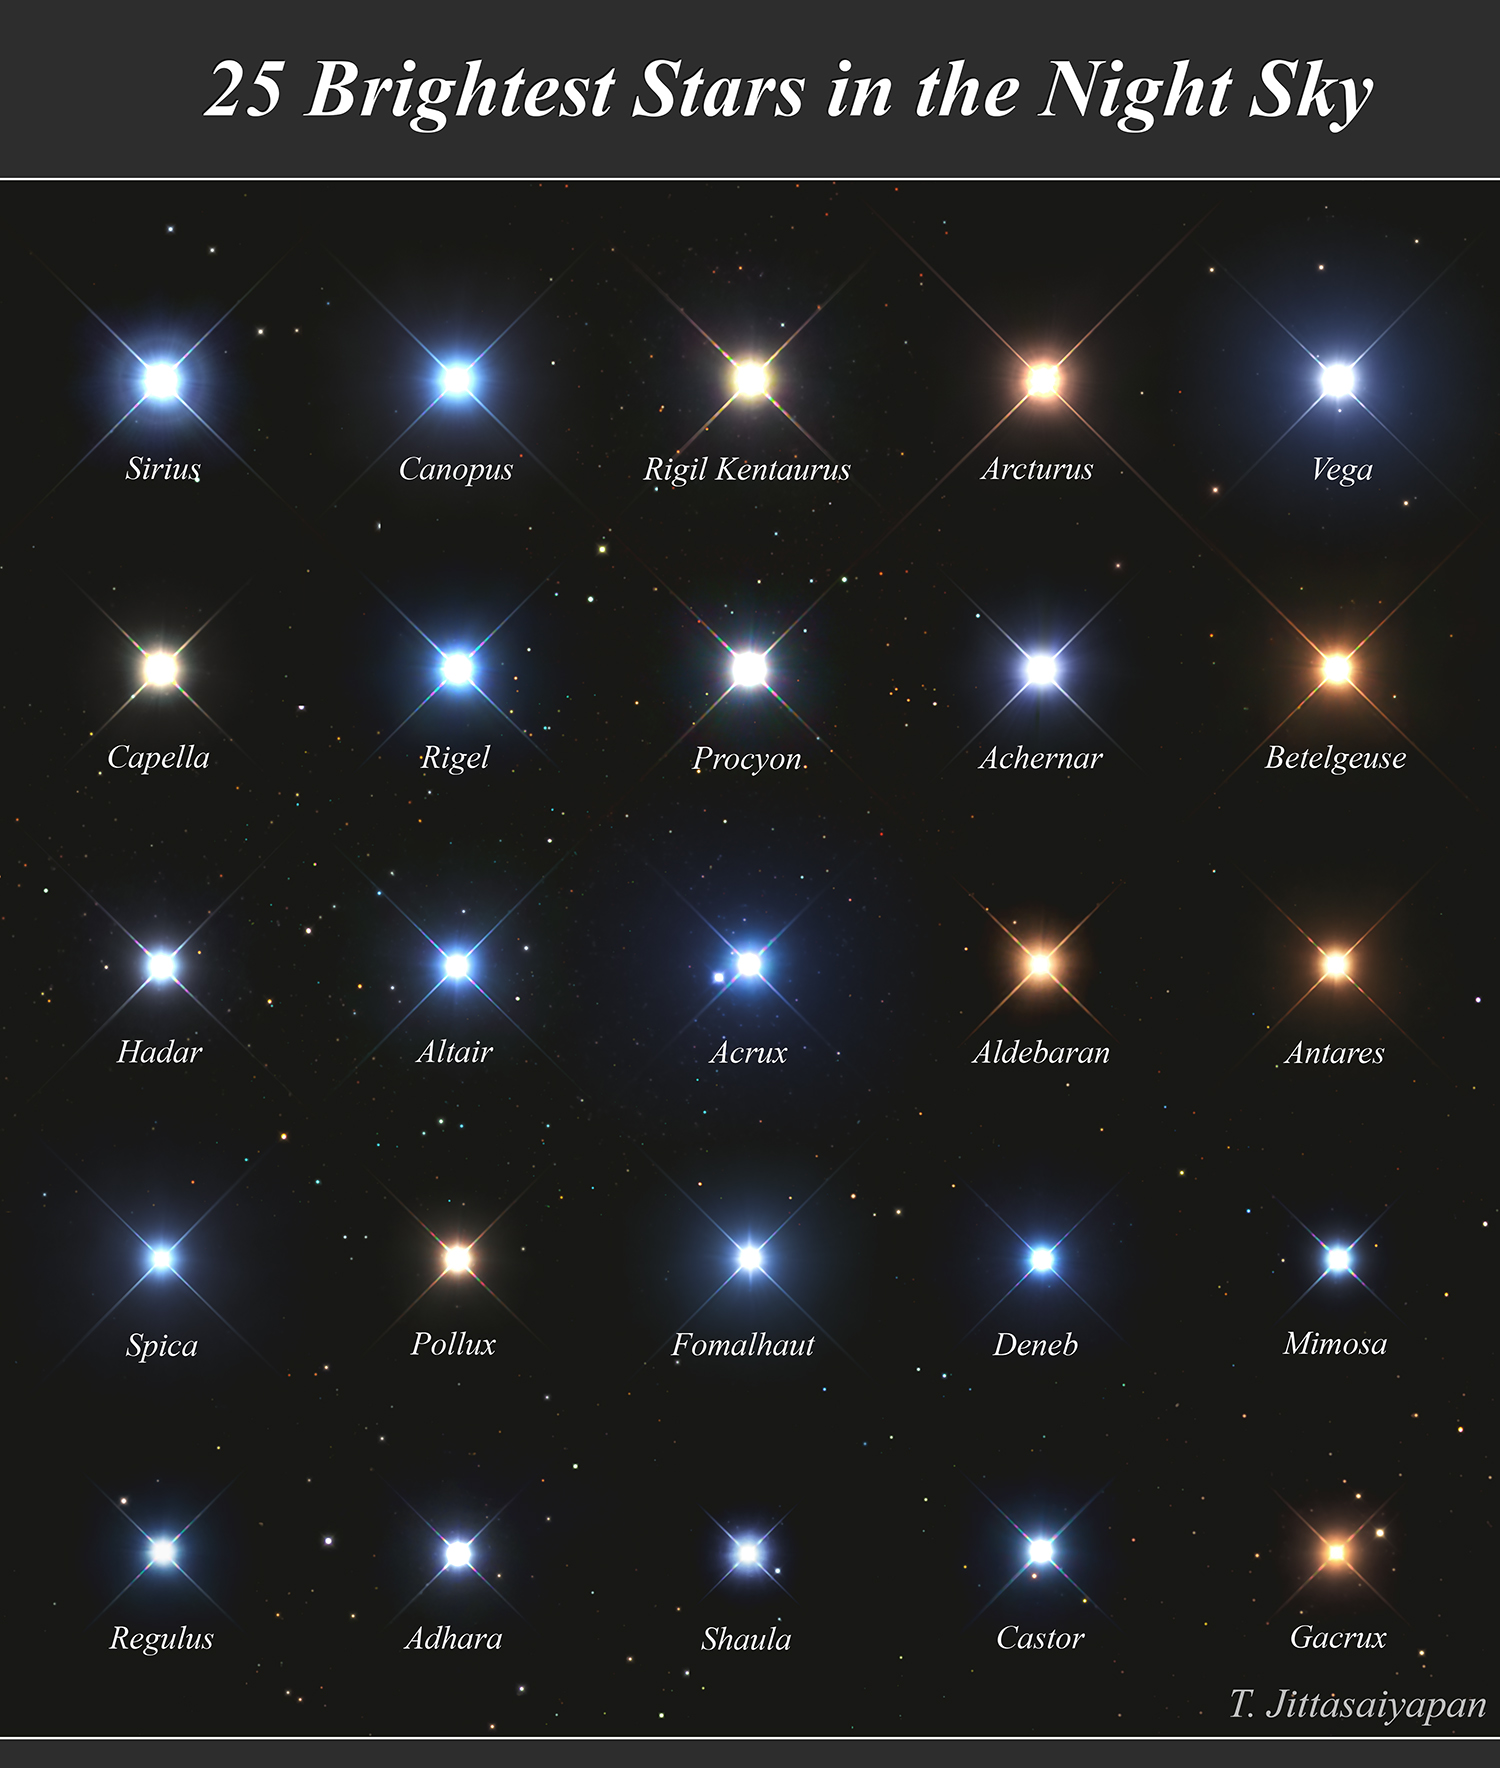 ¿Cuáles son las estrellas más brillantes?